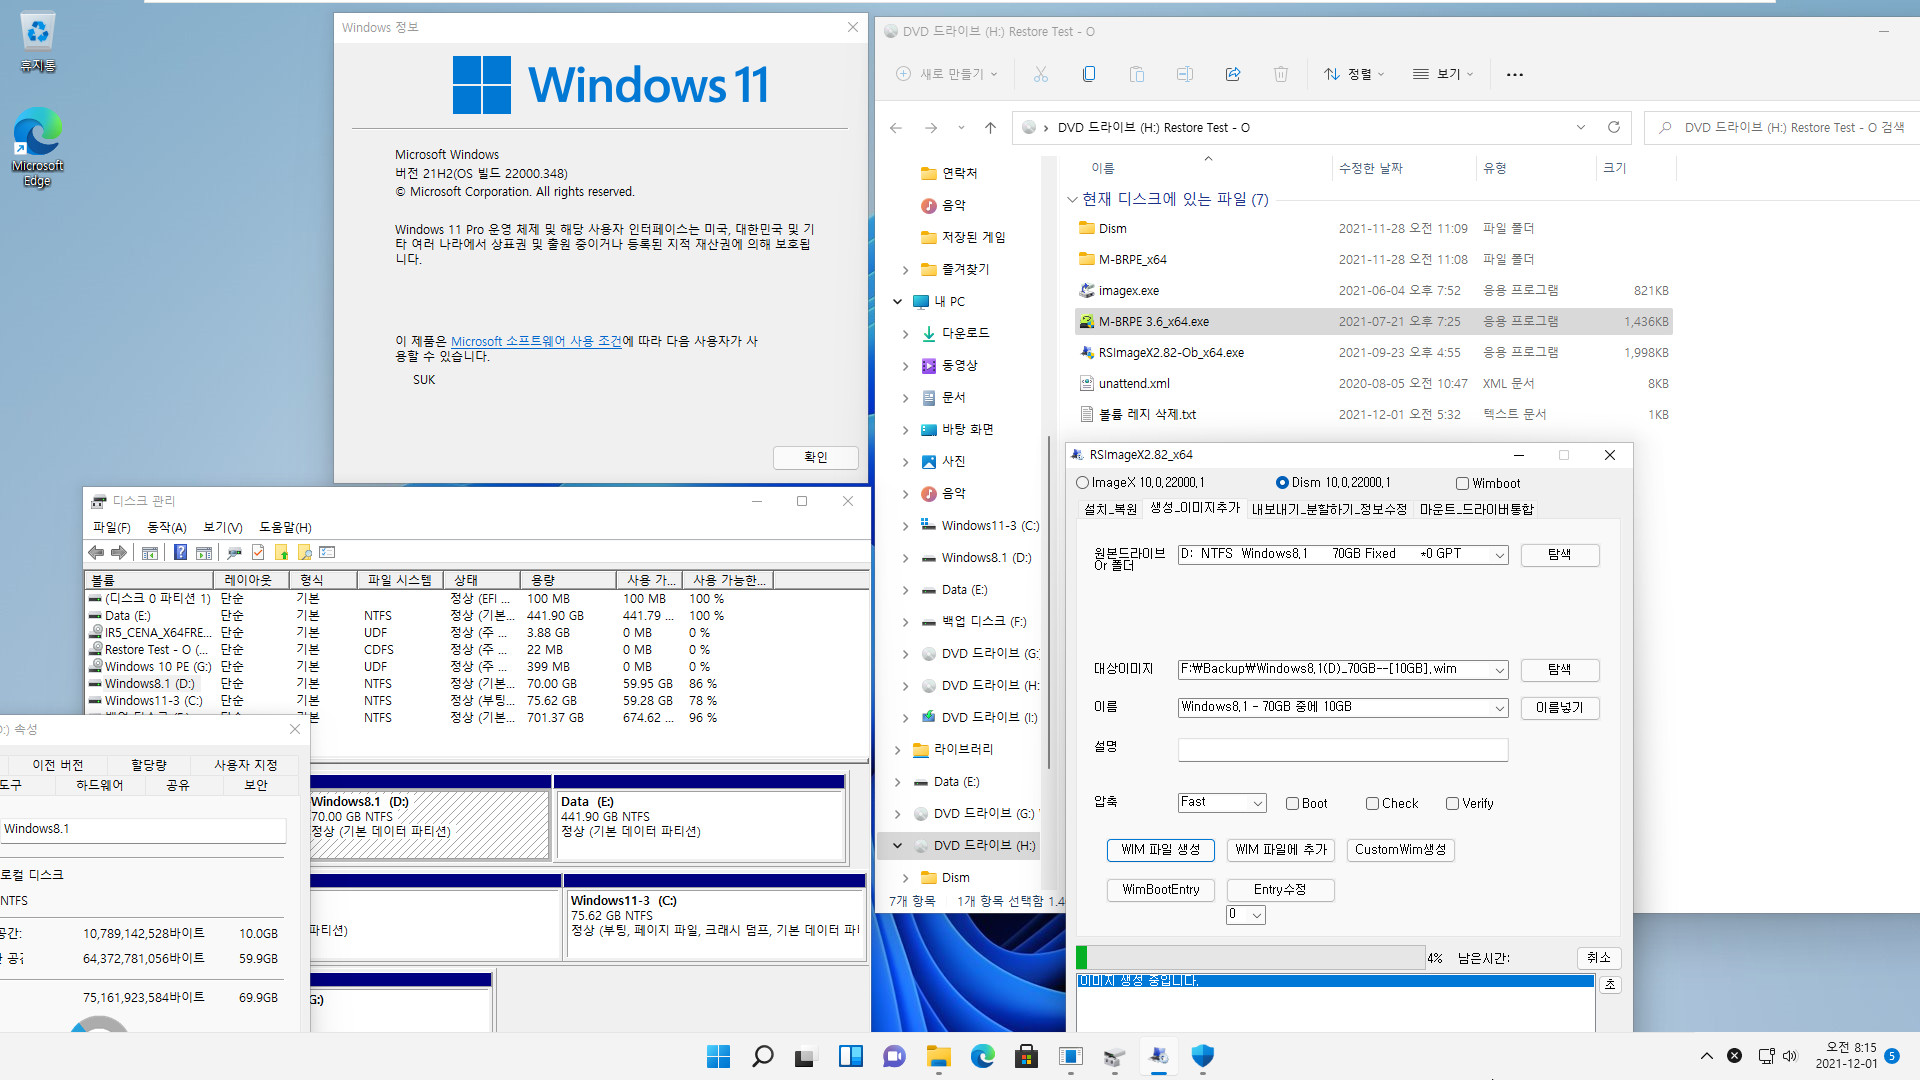 Windows 8.1은 여전히 같은 컴퓨터에서 다른 파티션에 복원하면 기존 윈도우와 복원한 윈도우 2개를 동시에 사용하는군요. 기존 C드라이브 문자만 삭제하면 정상 부팅됩니다 2021-12-01_081502.jpg